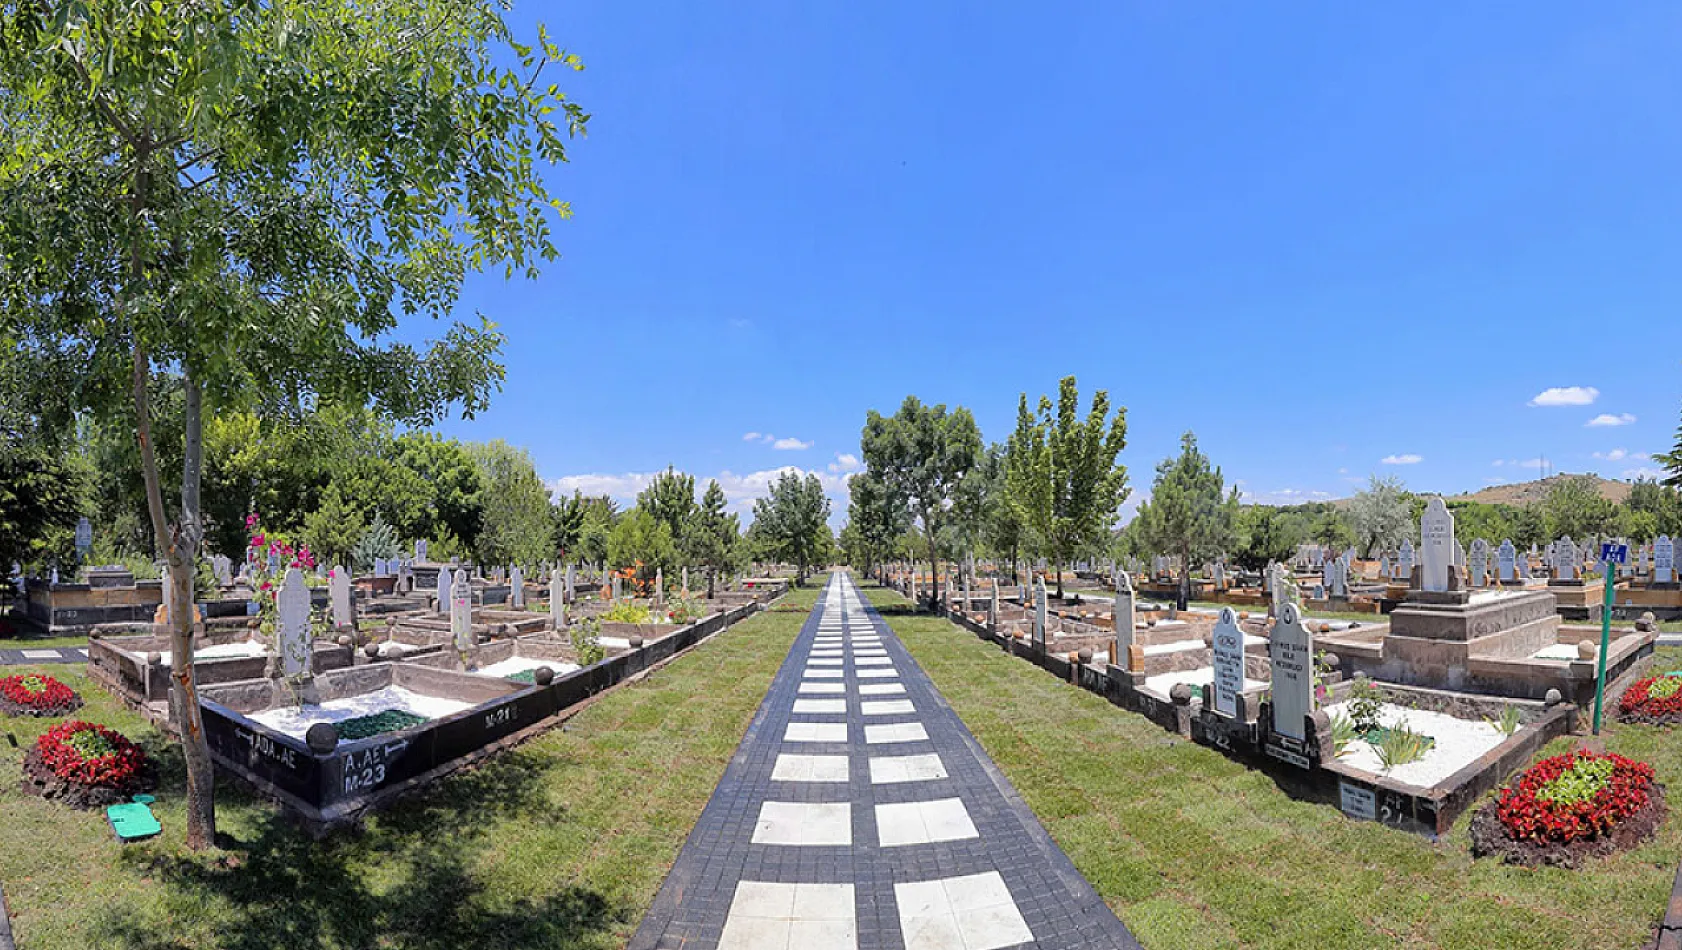 Bu da oldu! Kayseri'de 85 bin TL'ye mezarlık! Artık ölmek de lüks...